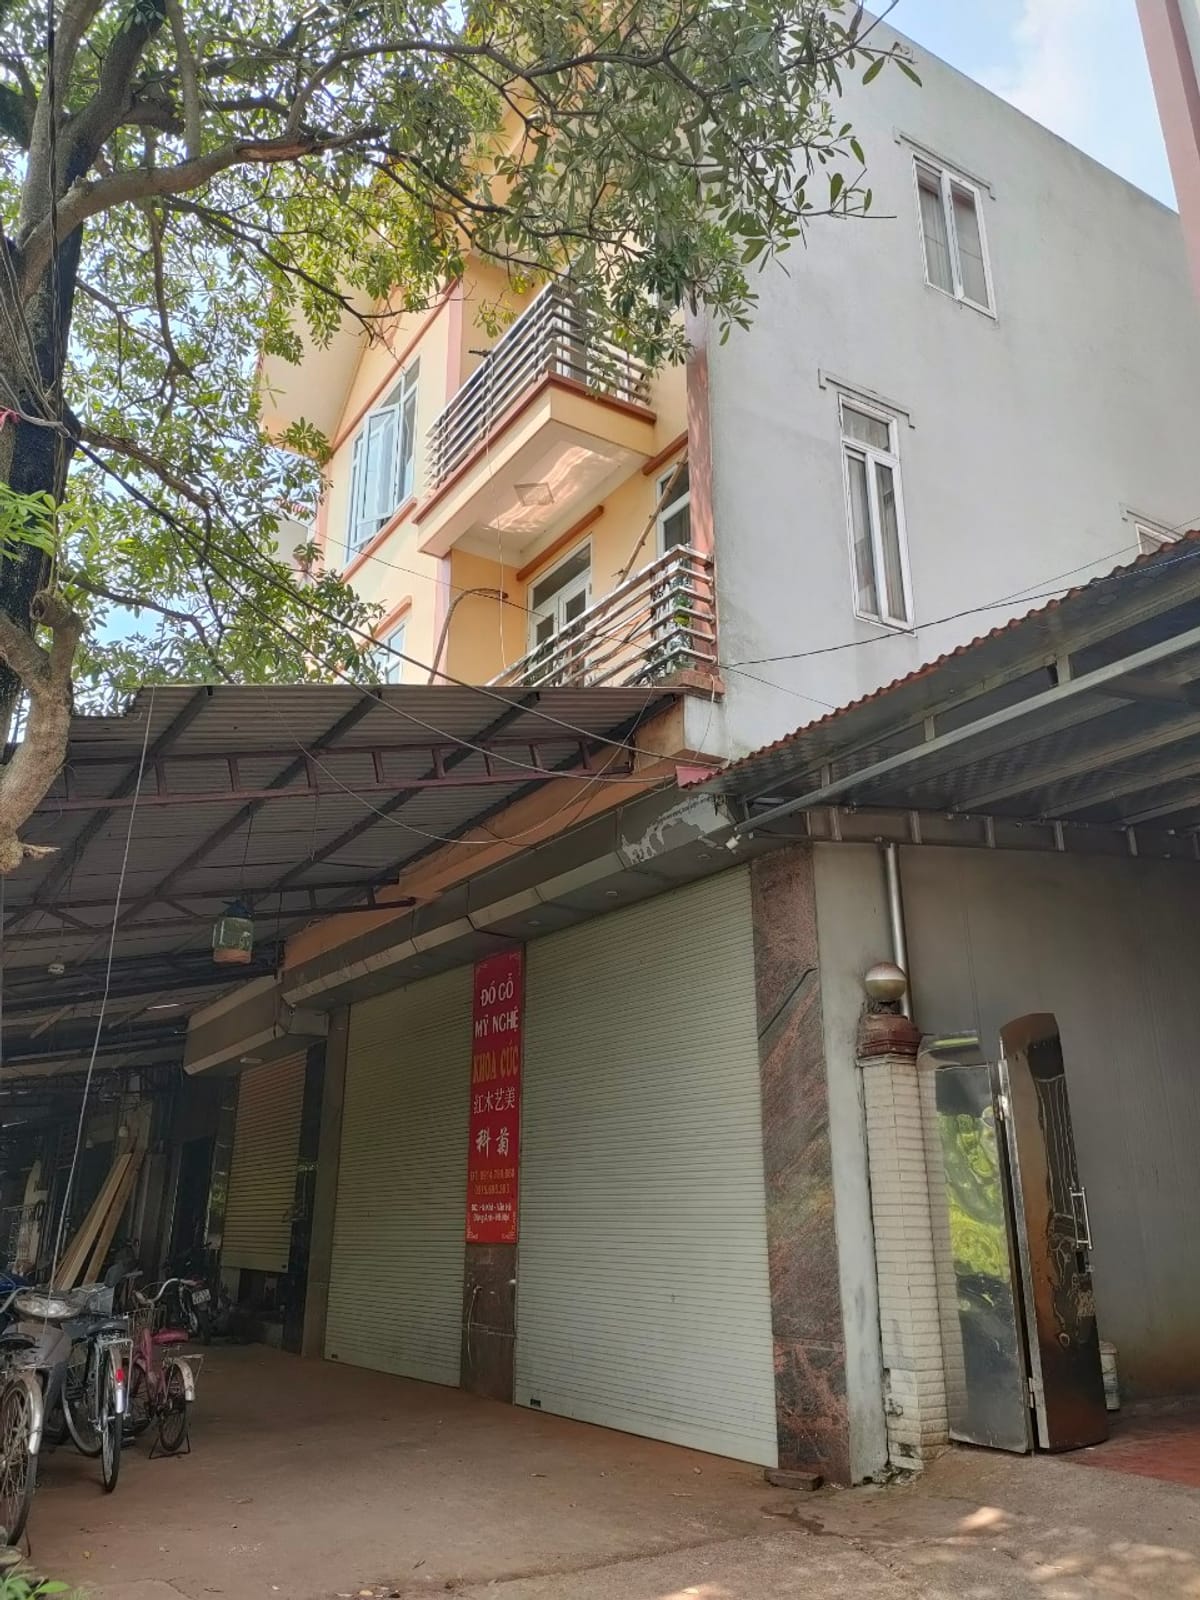 Chủ cần bán căn nhà 2 tầng tại khu phố Đồng Kỵ, TP Từ Sơn, Bắc Ninh, diện tích 60m2, mặt tiền gần 5m